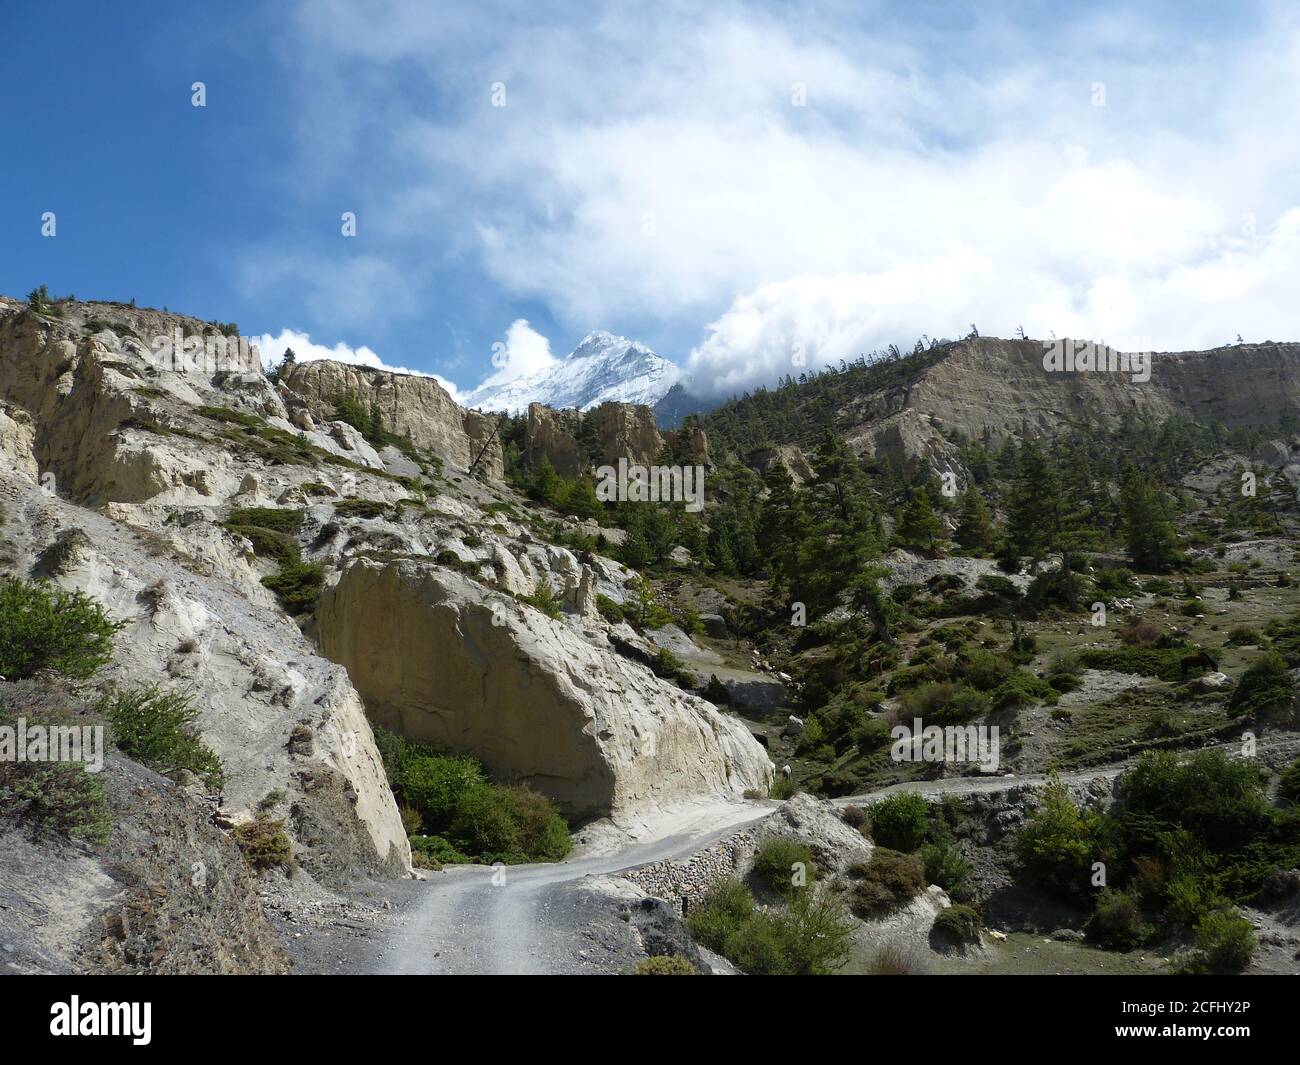 Wunderbare Himalaya-Landschaft von Mustang, Nepal. Majestätischer Schnee Himalaya Berge in Tibet. Weiße Felsen. Immergrüne Nadelbäume. Tolle Nilgiri-Halterung. Stockfoto